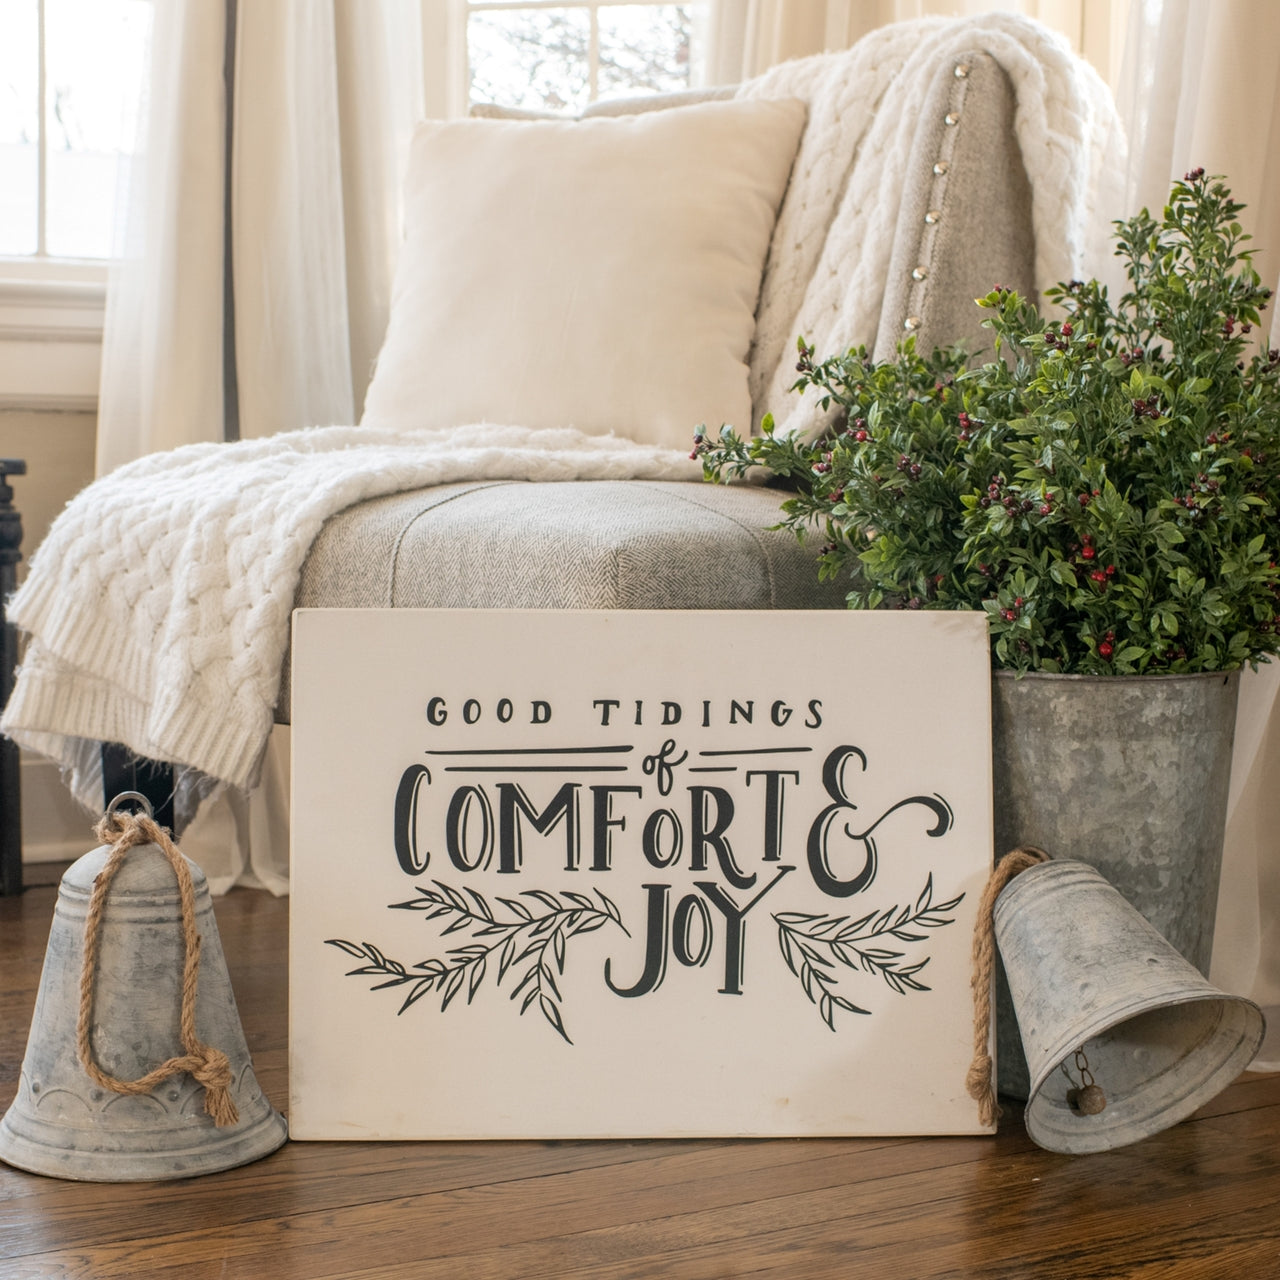 Comfort & Joy Sign